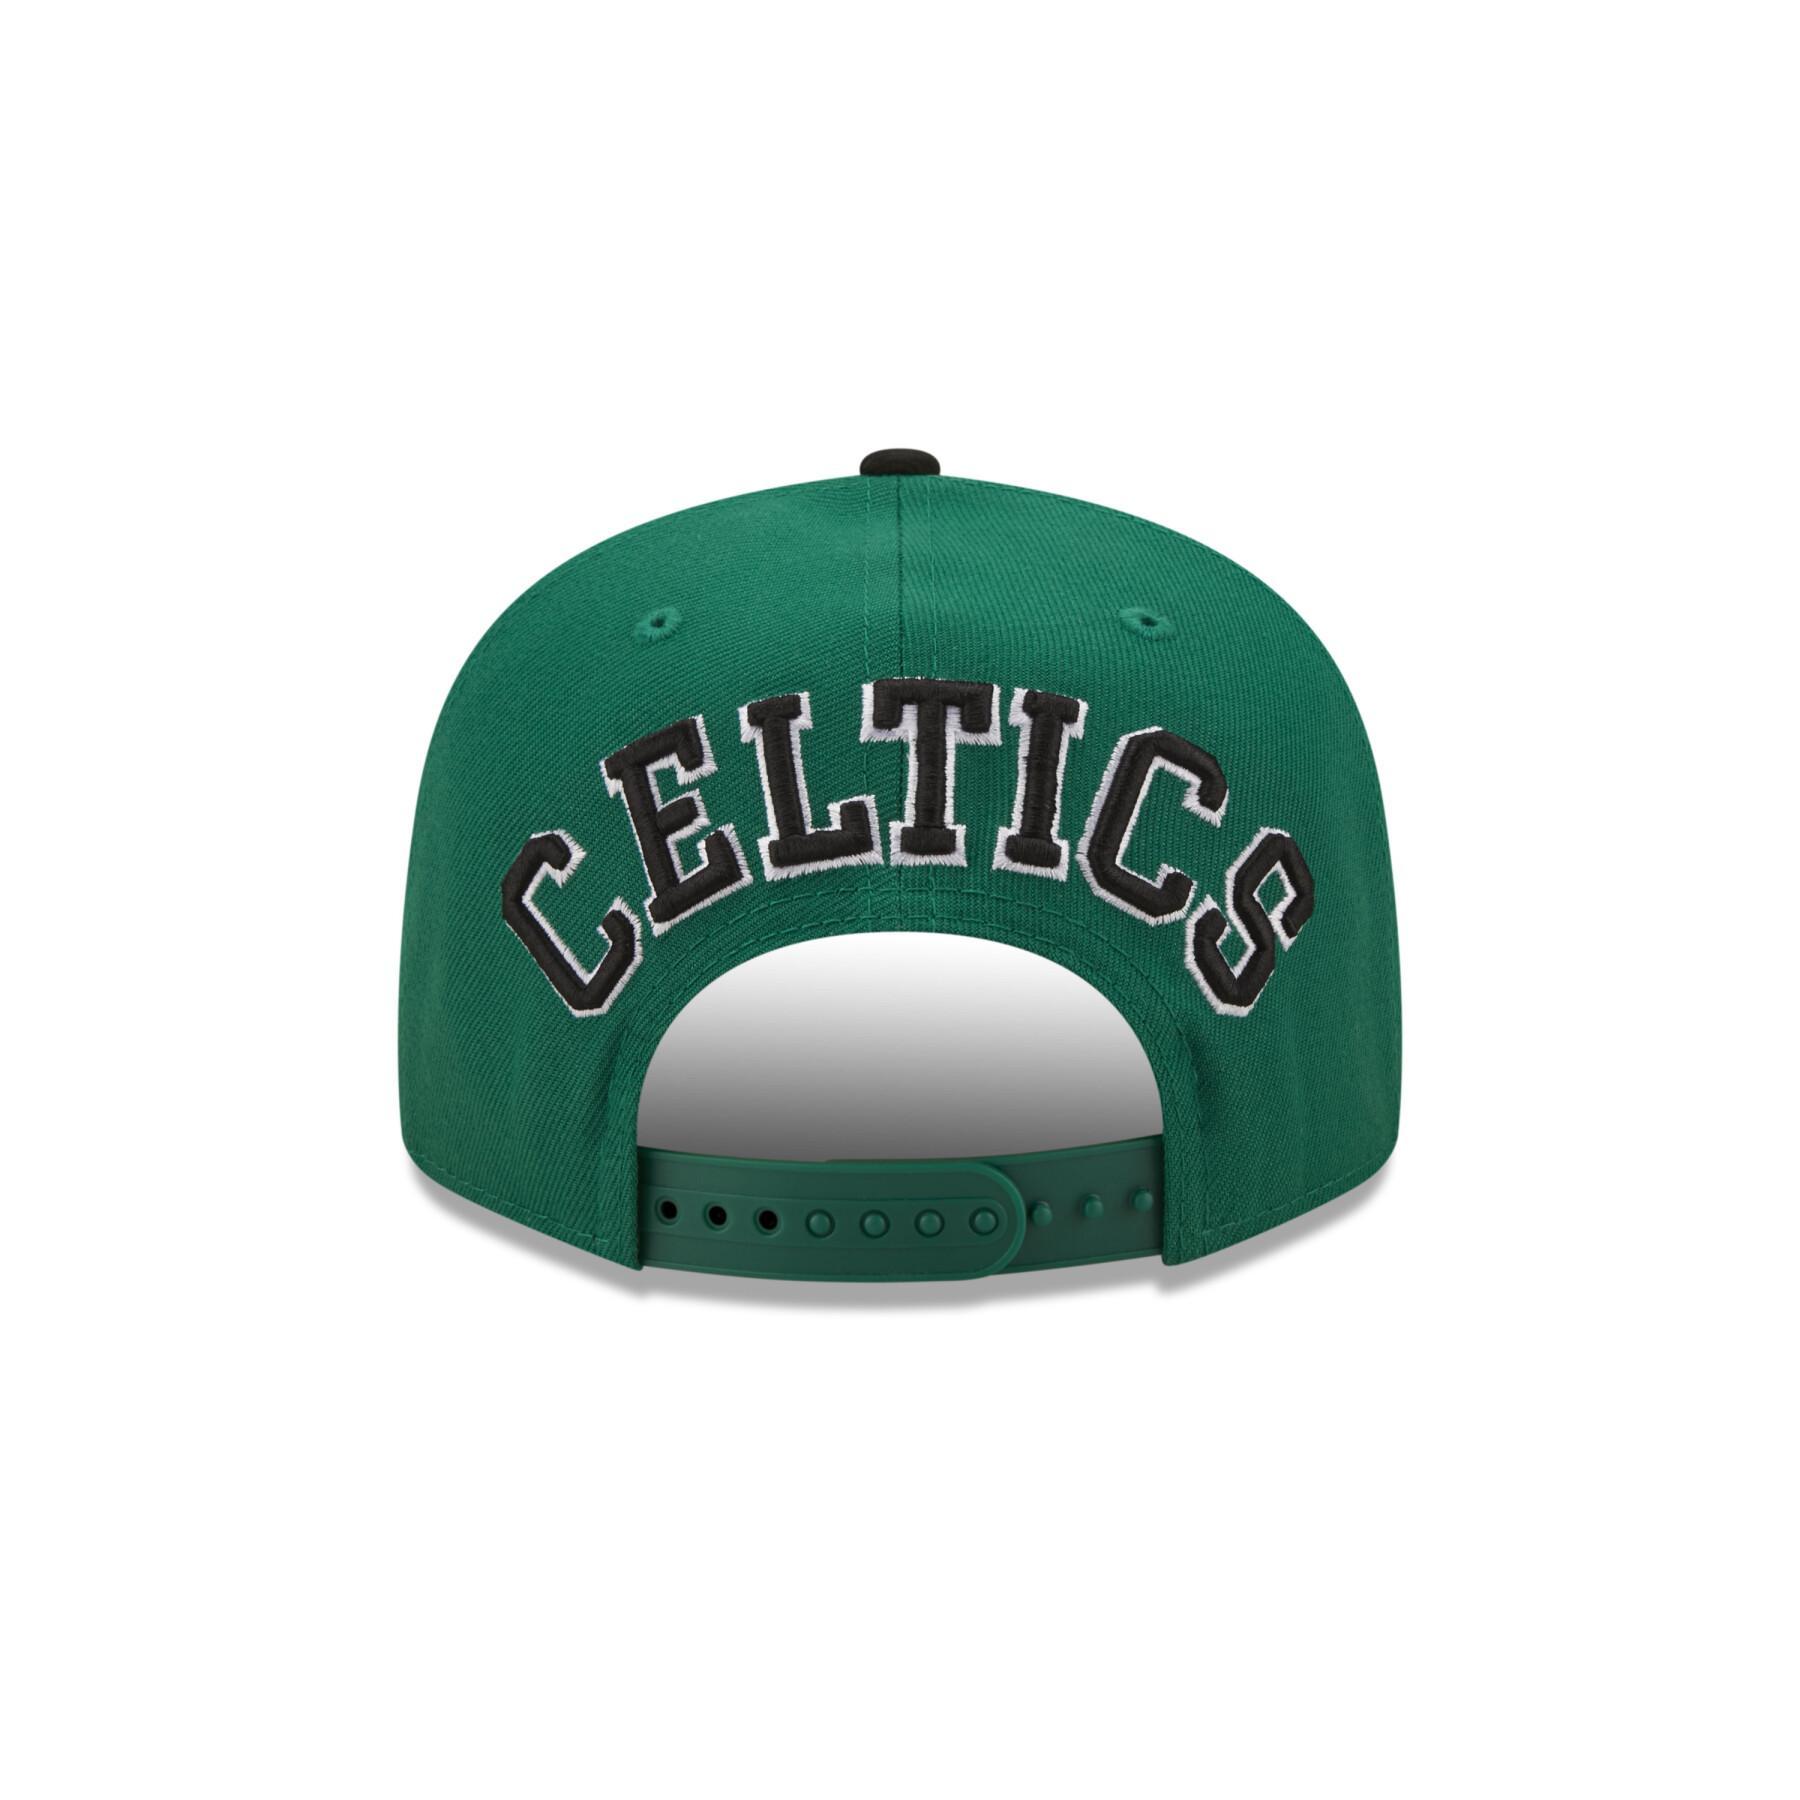 Casquette 9fifty Boston Celtics